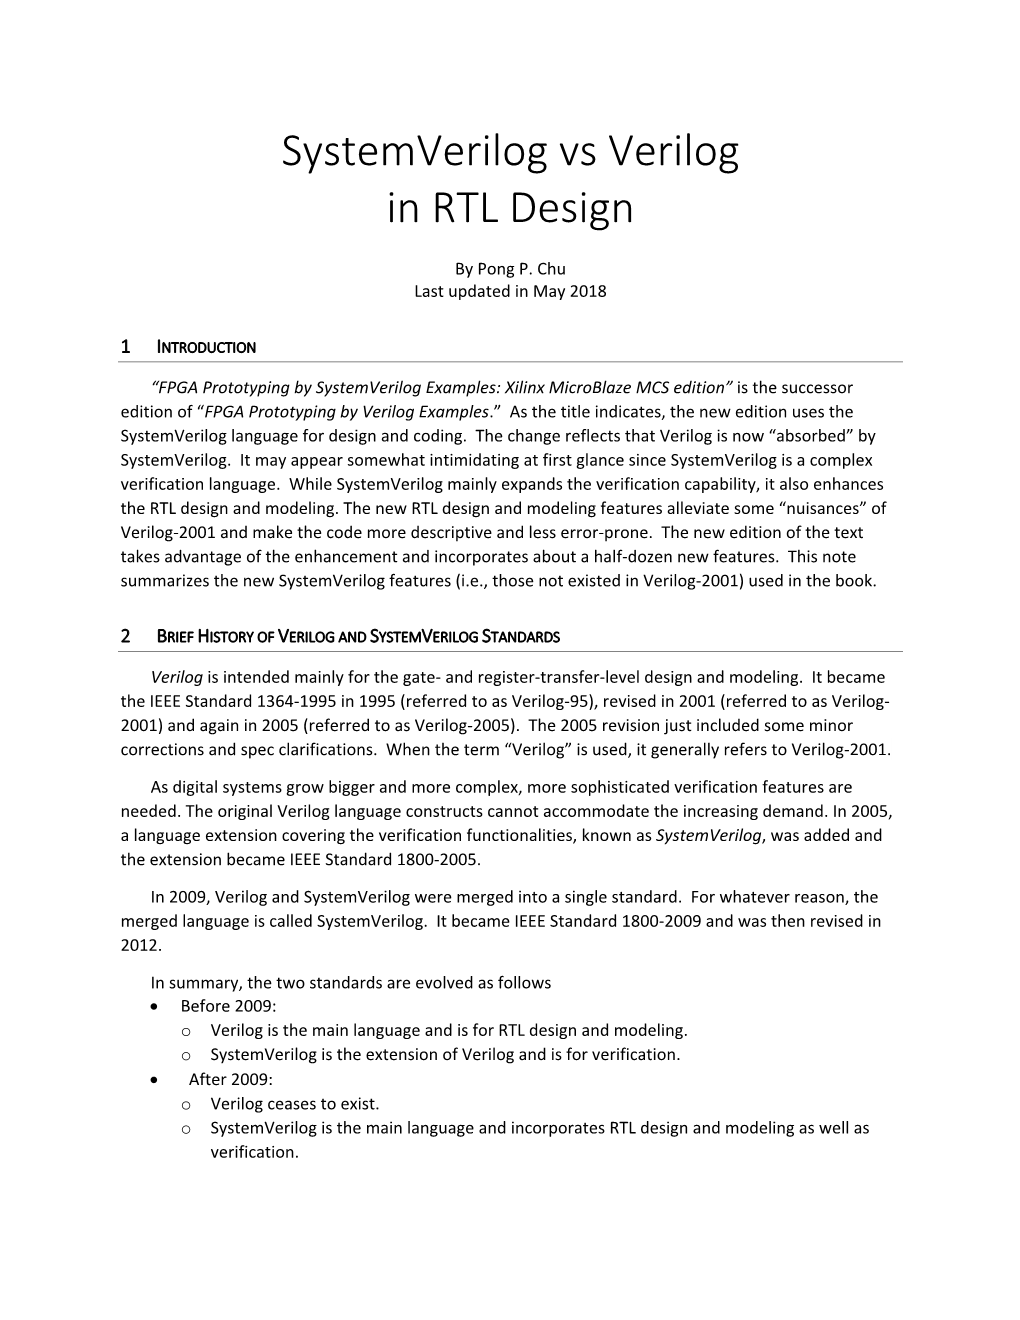 Systemverilog Vs Verilog in RTL Design